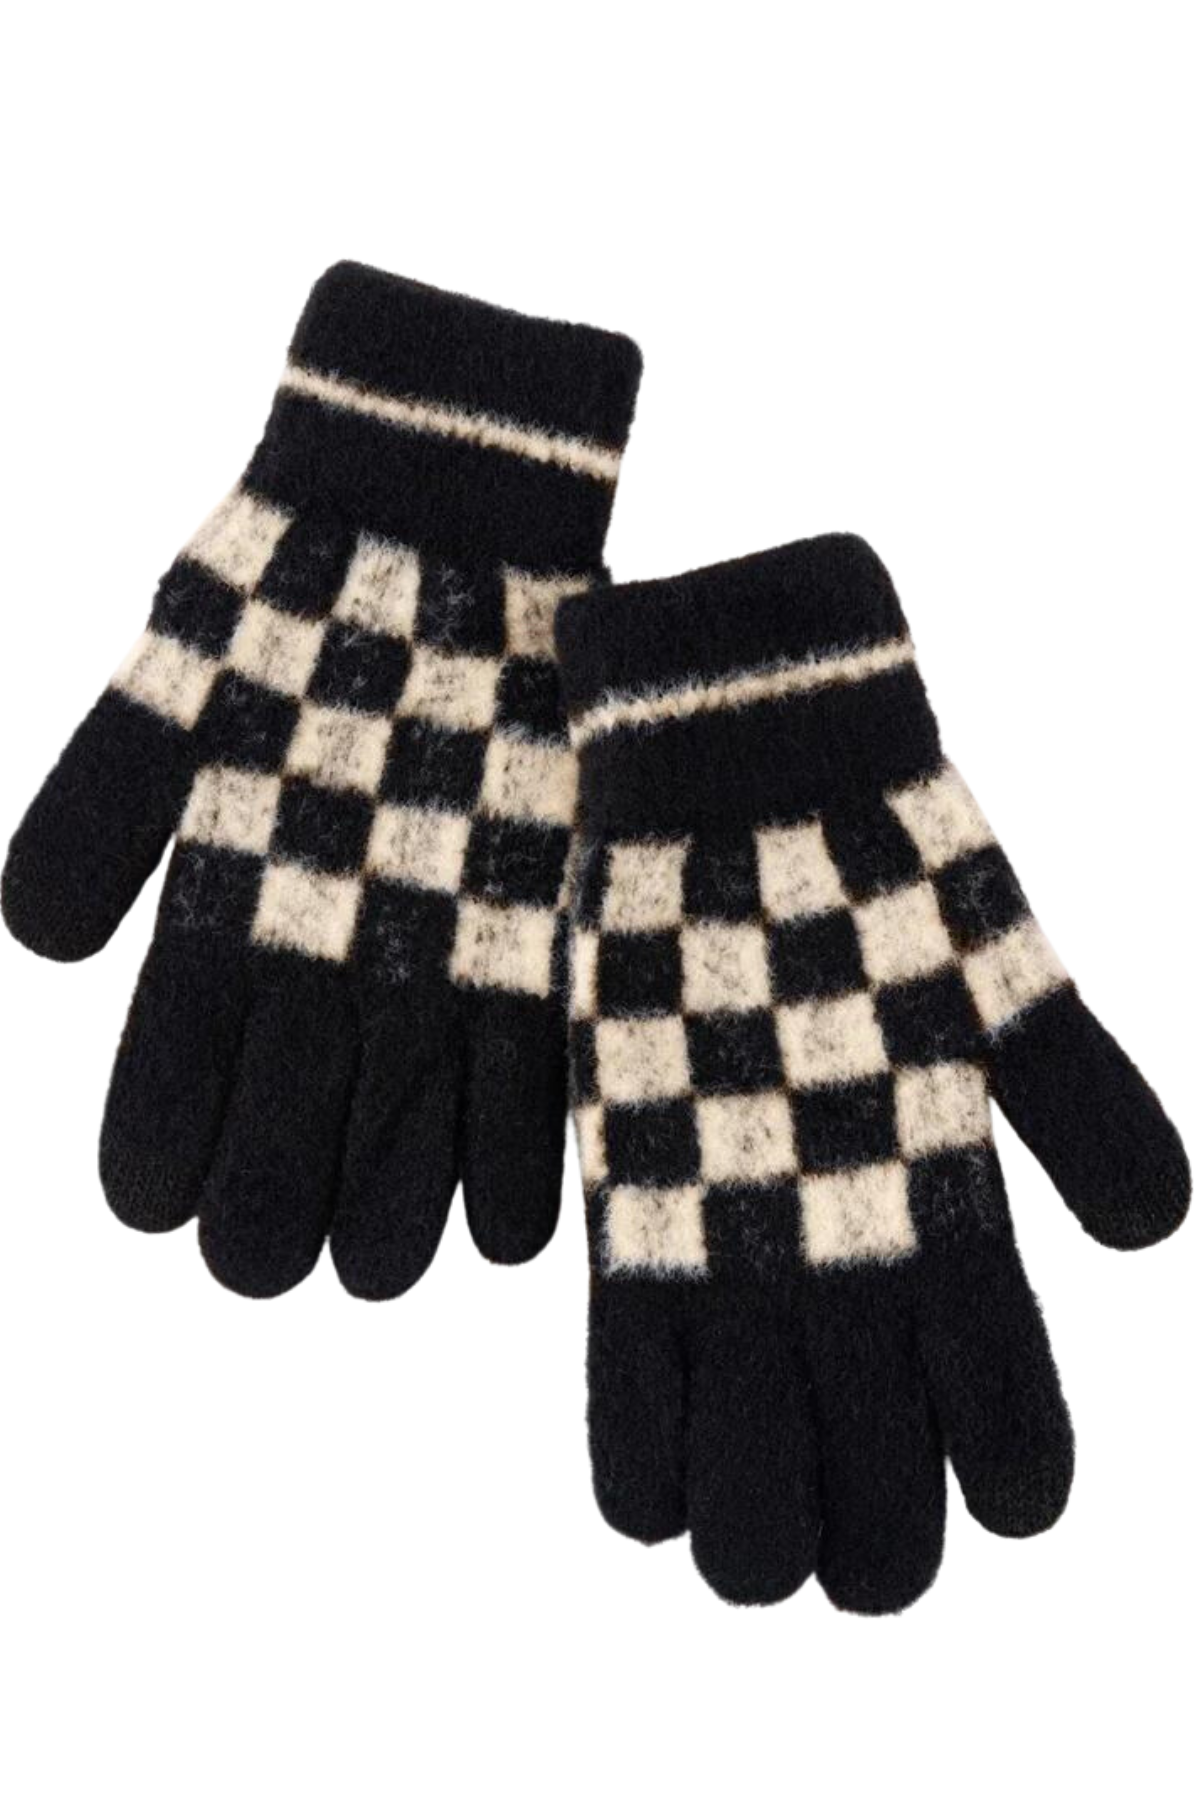 Tanner Checkered Gloves